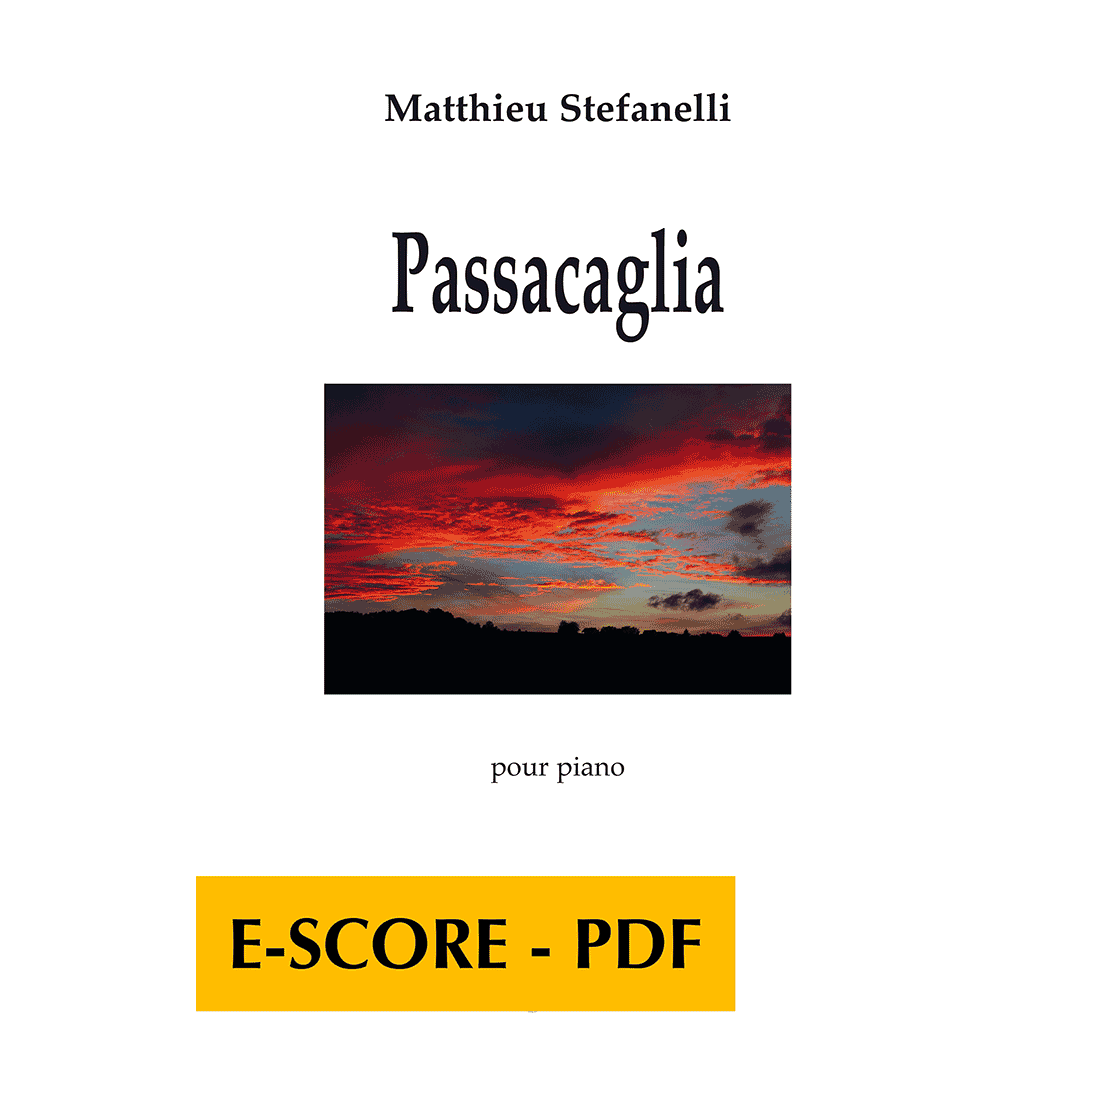 Passacaglia pour piano - E-score PDF